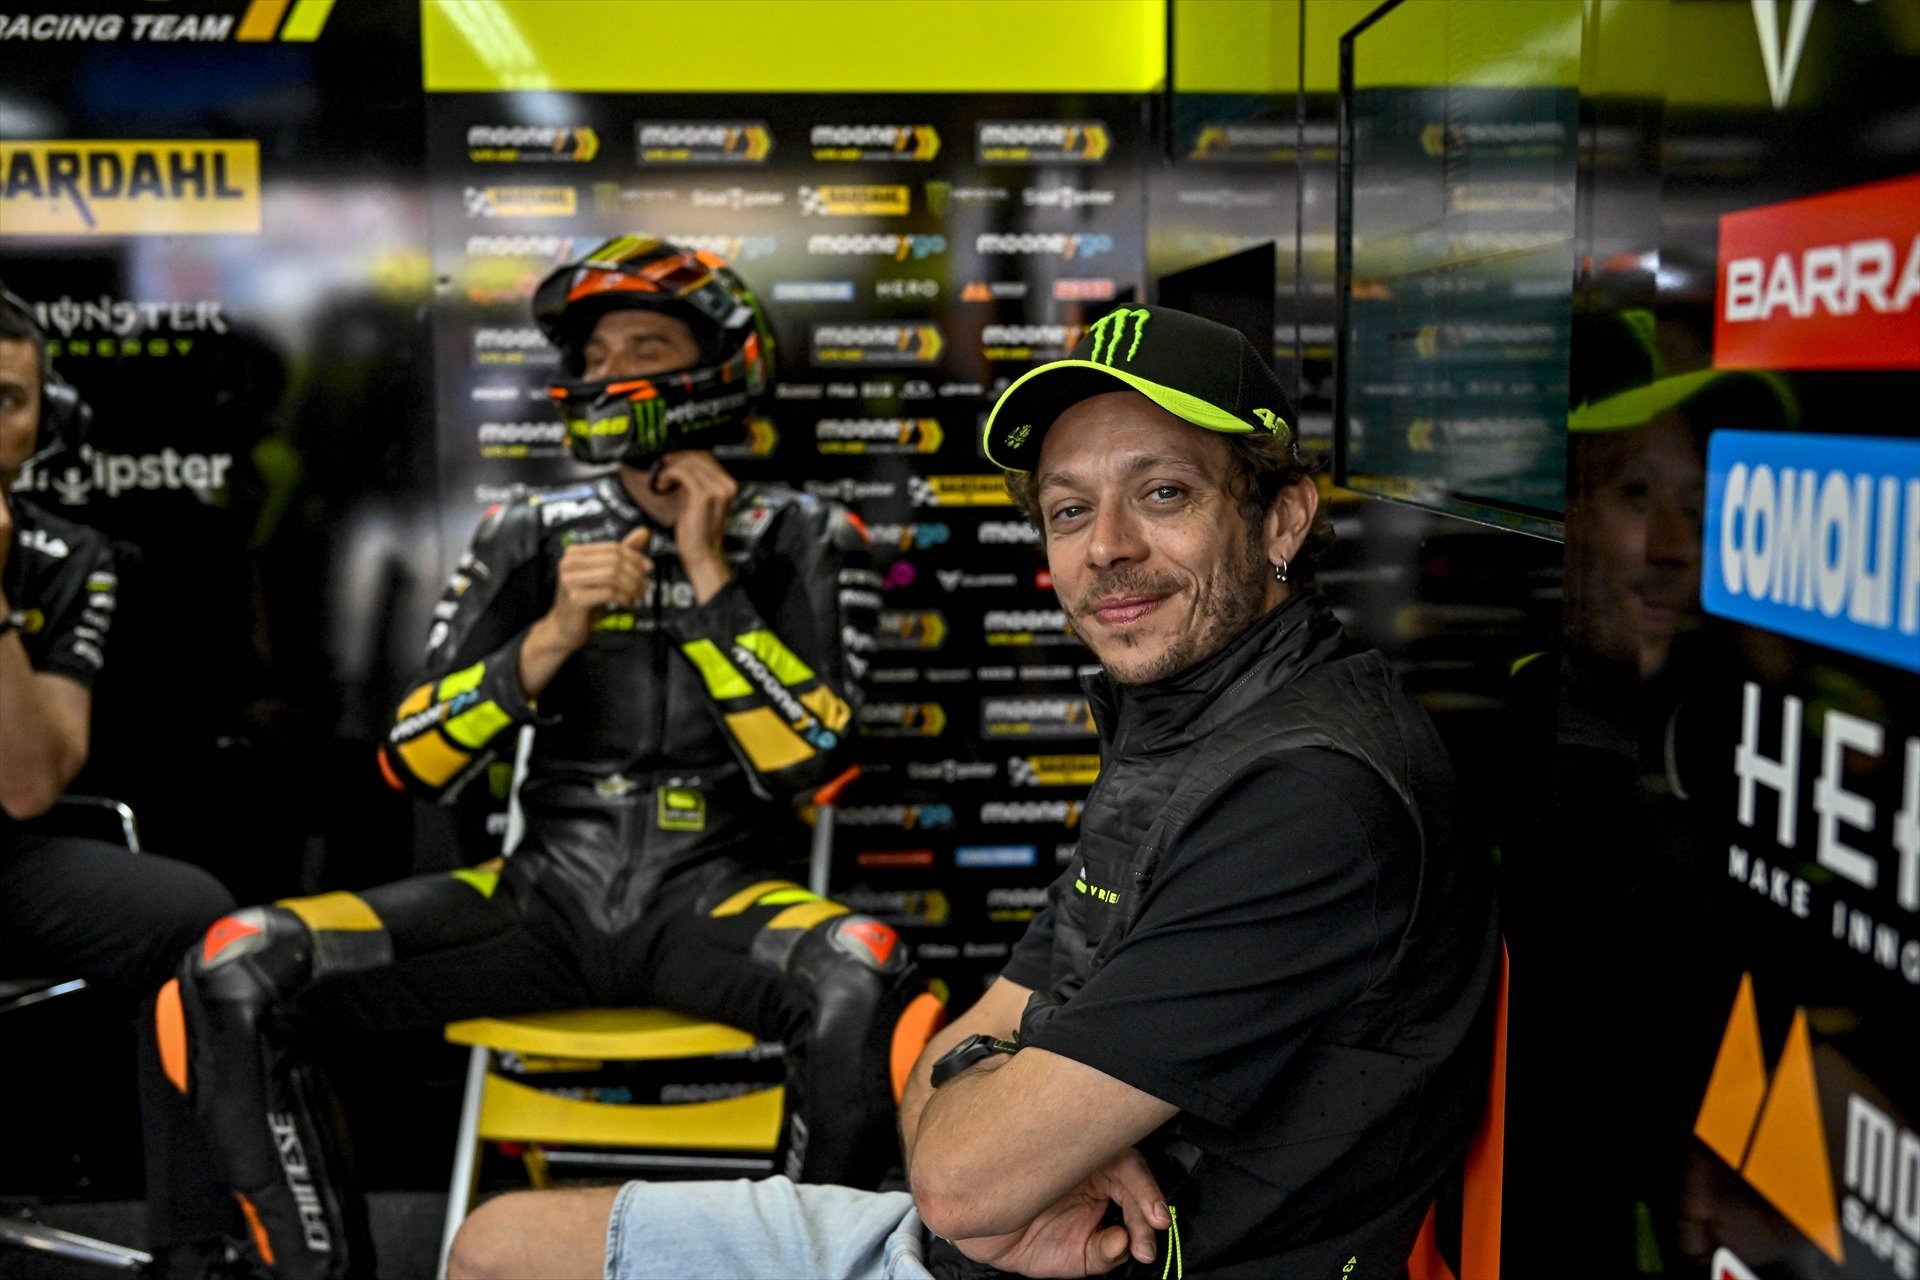 Oficial, Valentino Rossi se cansa de ver las motos por la tele y vuelve a la competición